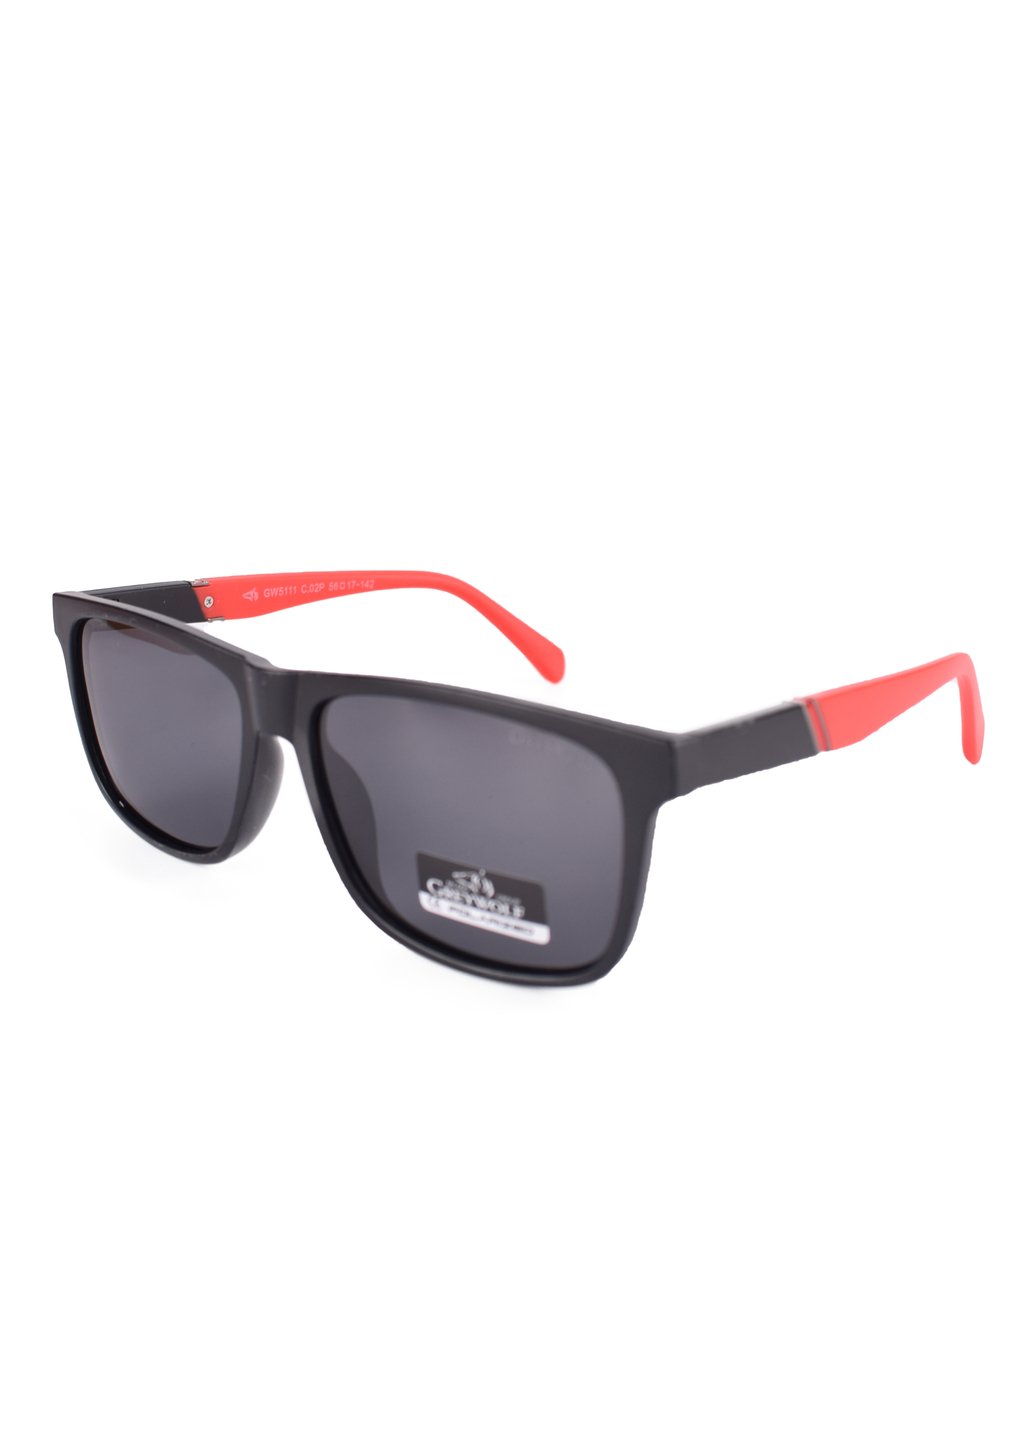 Купить Черные мужские солнцезащитные очки Gray Wolf с поряризацией GW5111 121010 в интернет-магазине